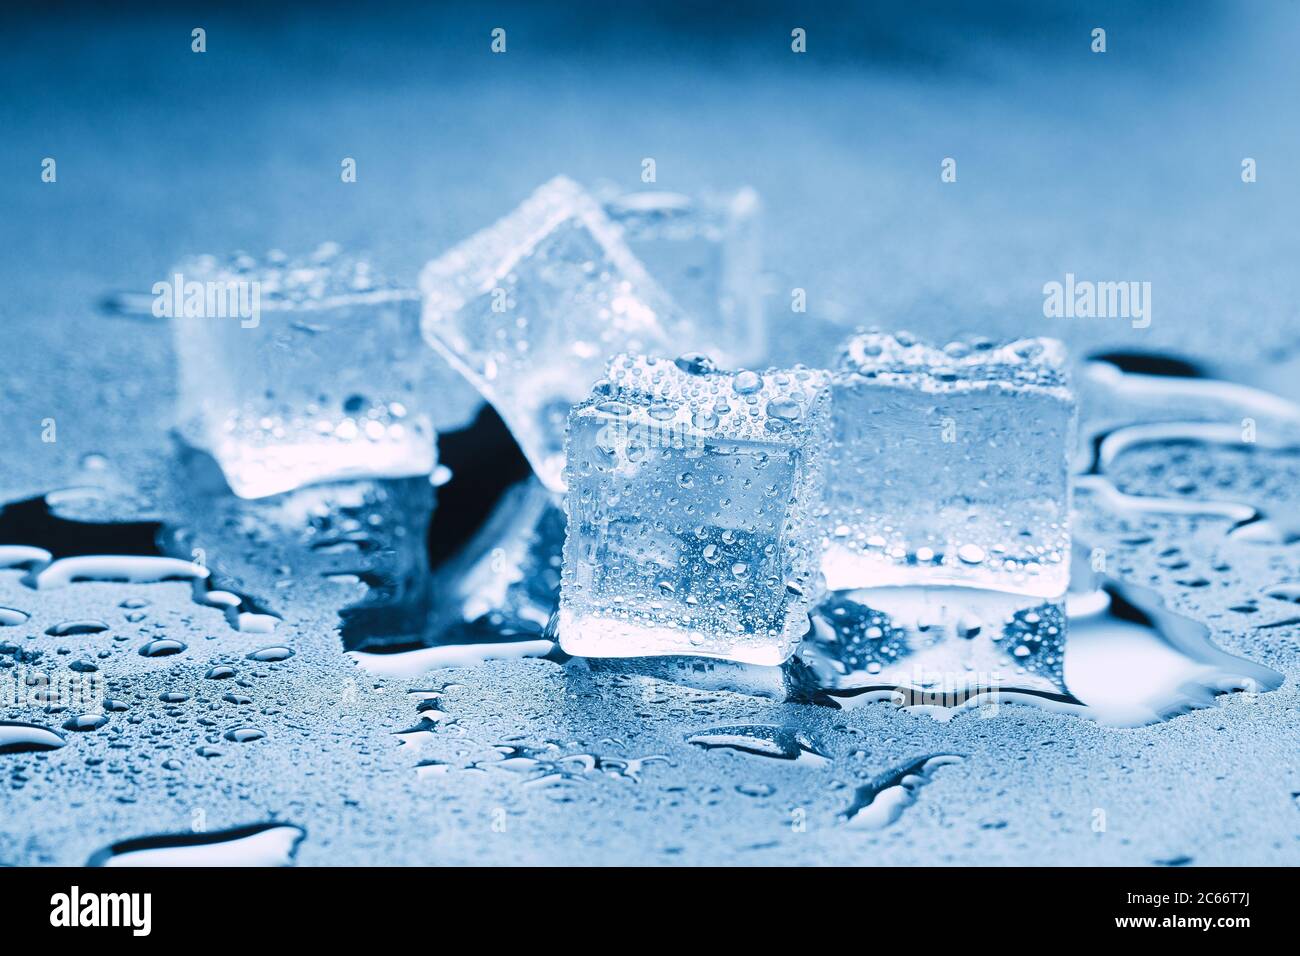 Cubitos de hielo / una colina de cubitos de hielo transparentes en un vaso  negro con gotas de agua alrededor.